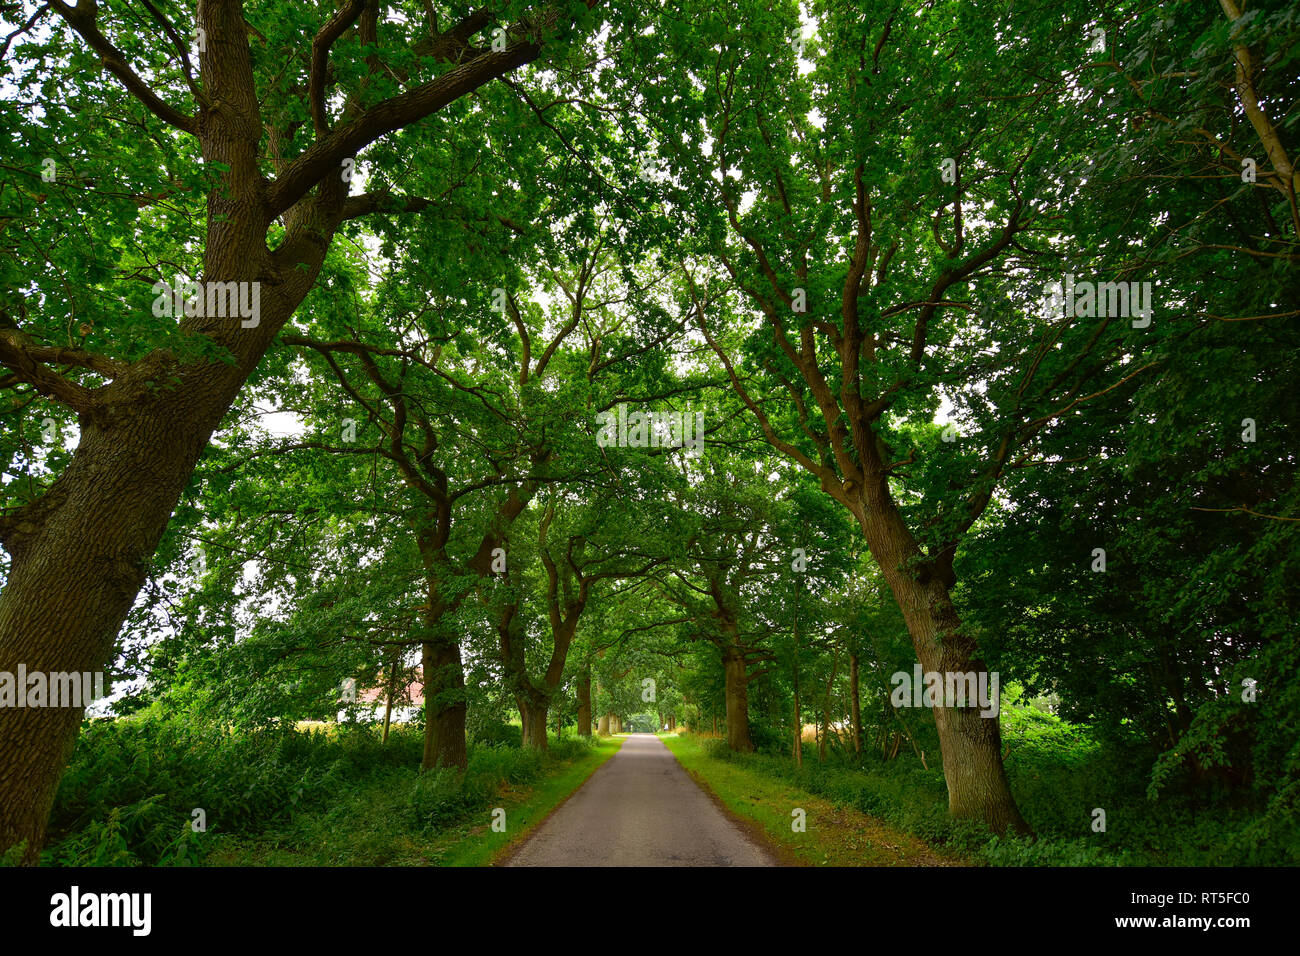 Deutschland, Mecklenburg-Vorpommern, Rügen, Sellin, leer, von Bäumen gesäumten Straße Stockfoto